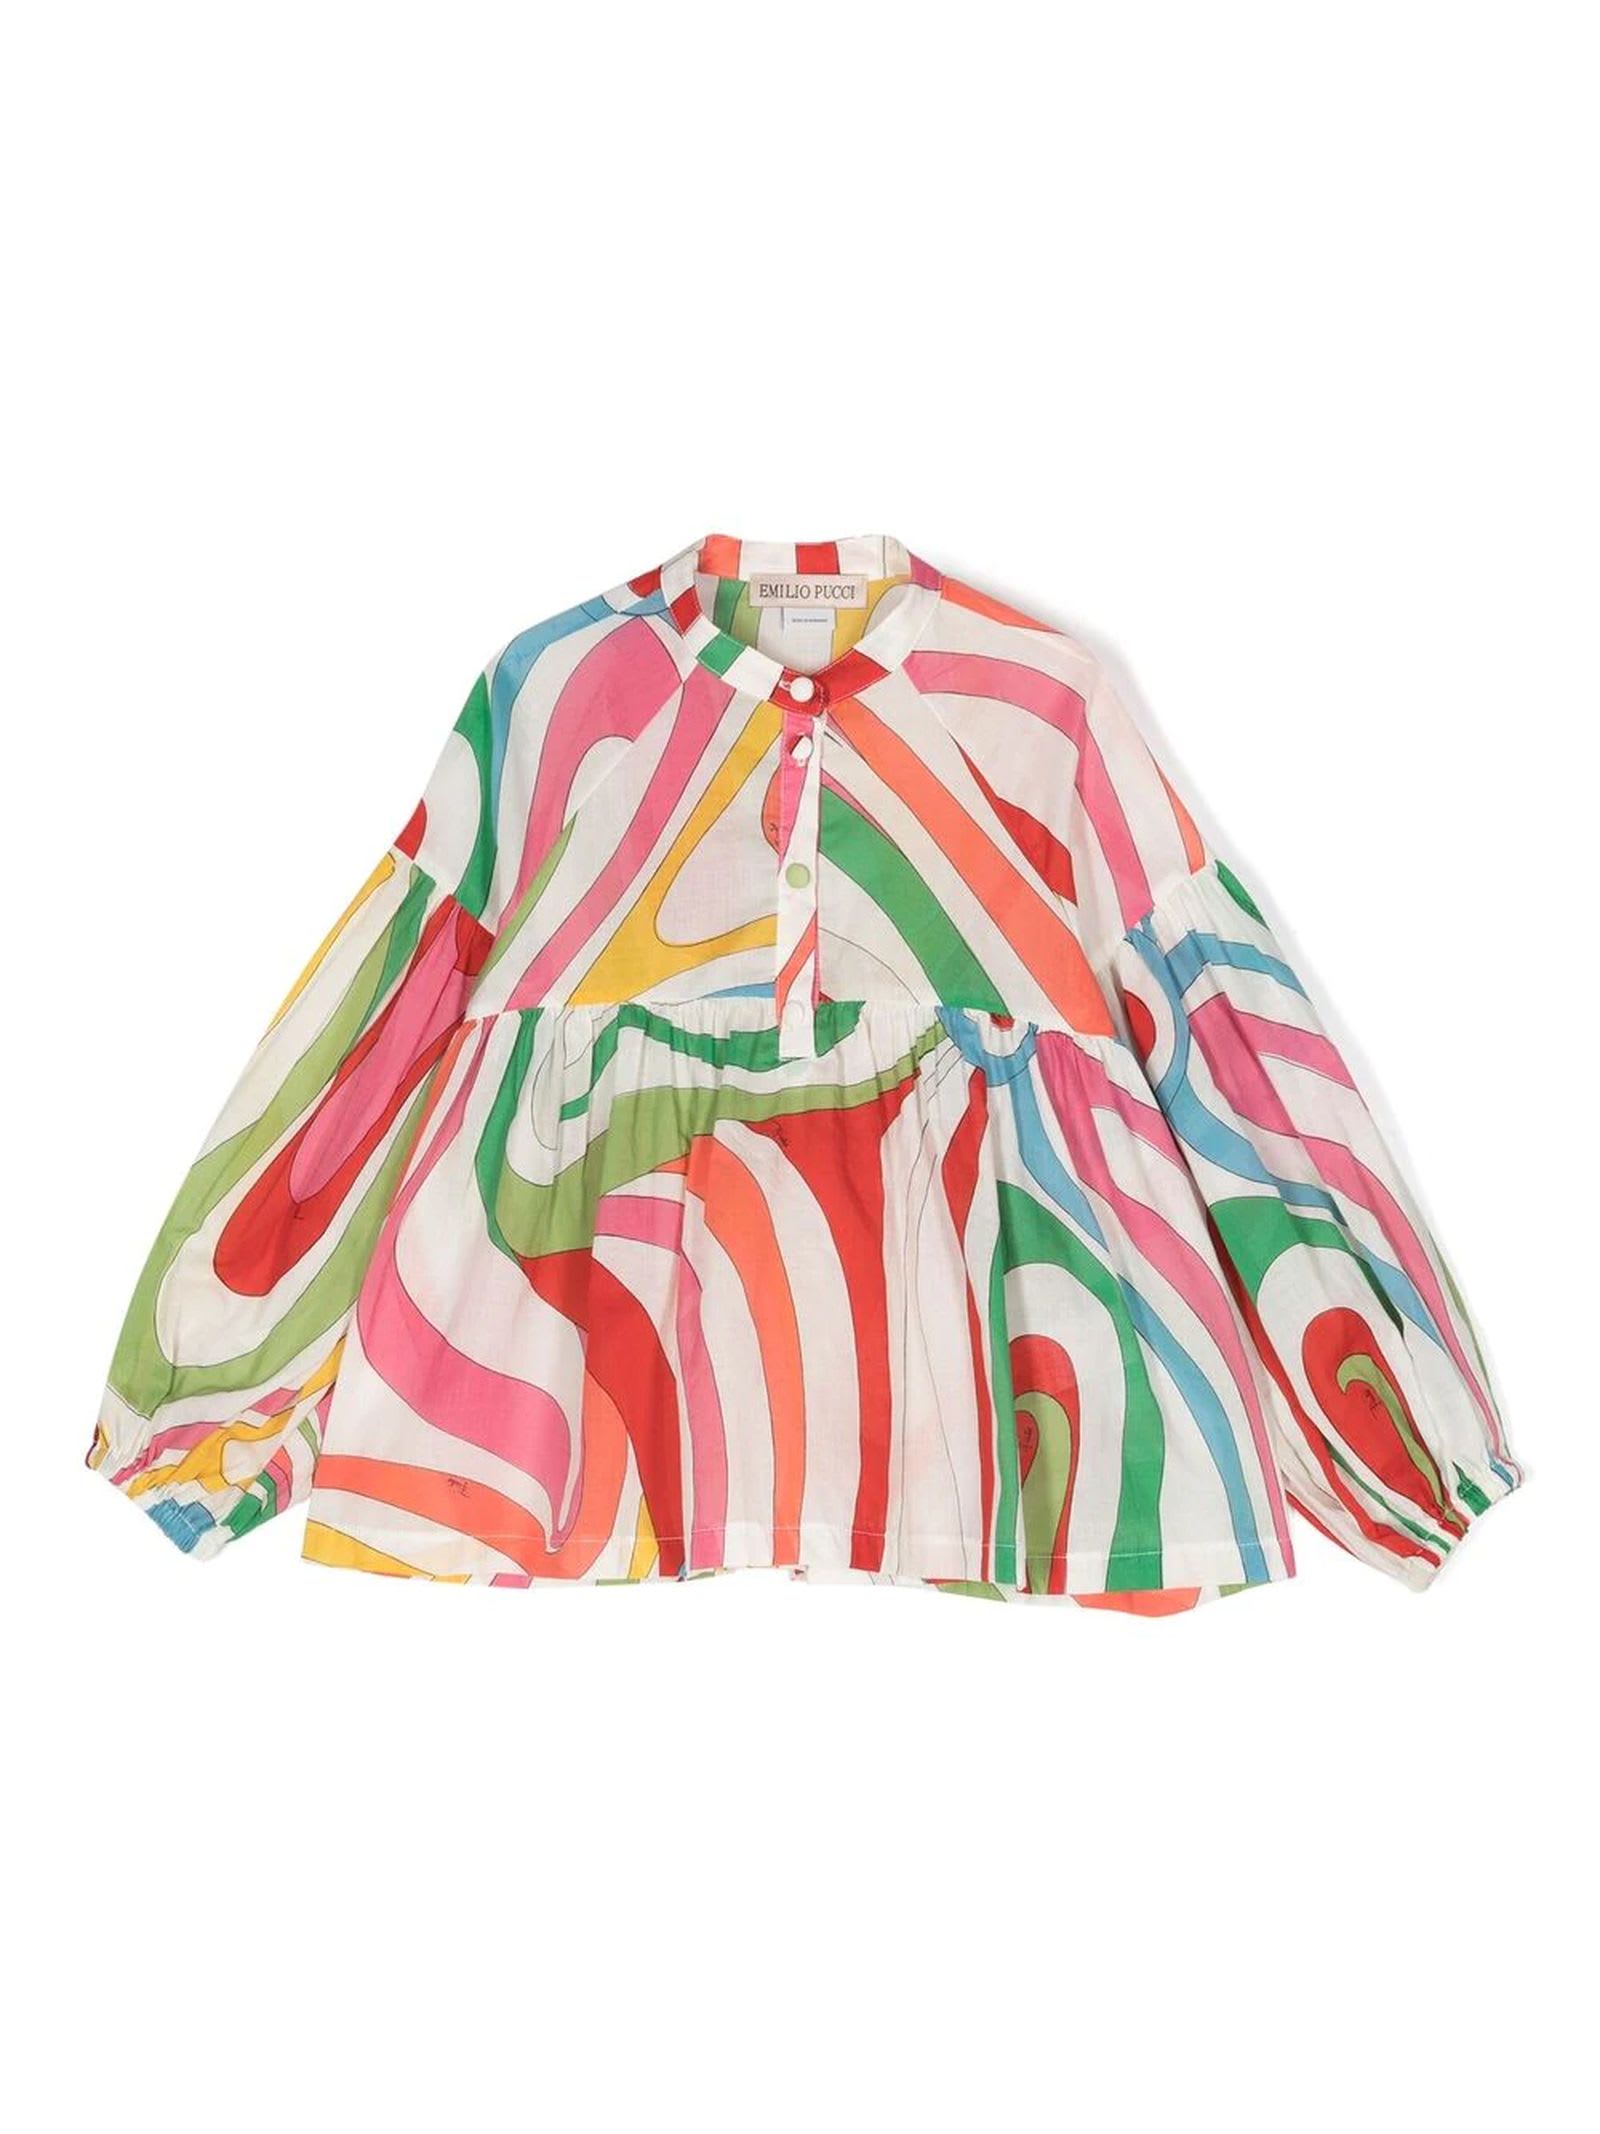 Emilio Pucci Kids' Multicolor Cotton Shirt